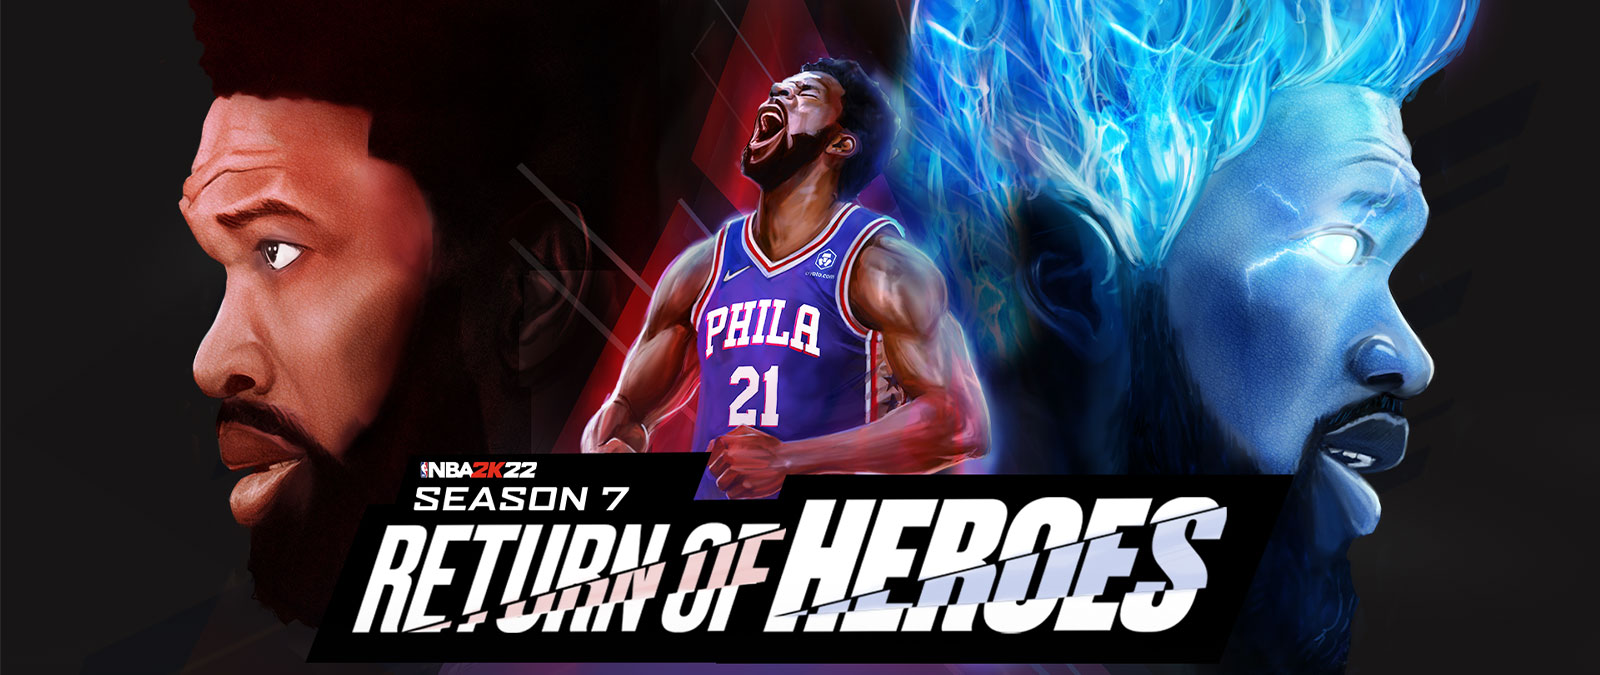 NBA 2K22, Сезон 7, Возвращение героев, игрок Филадельфии кричит в небо и загорается синим пламенем.